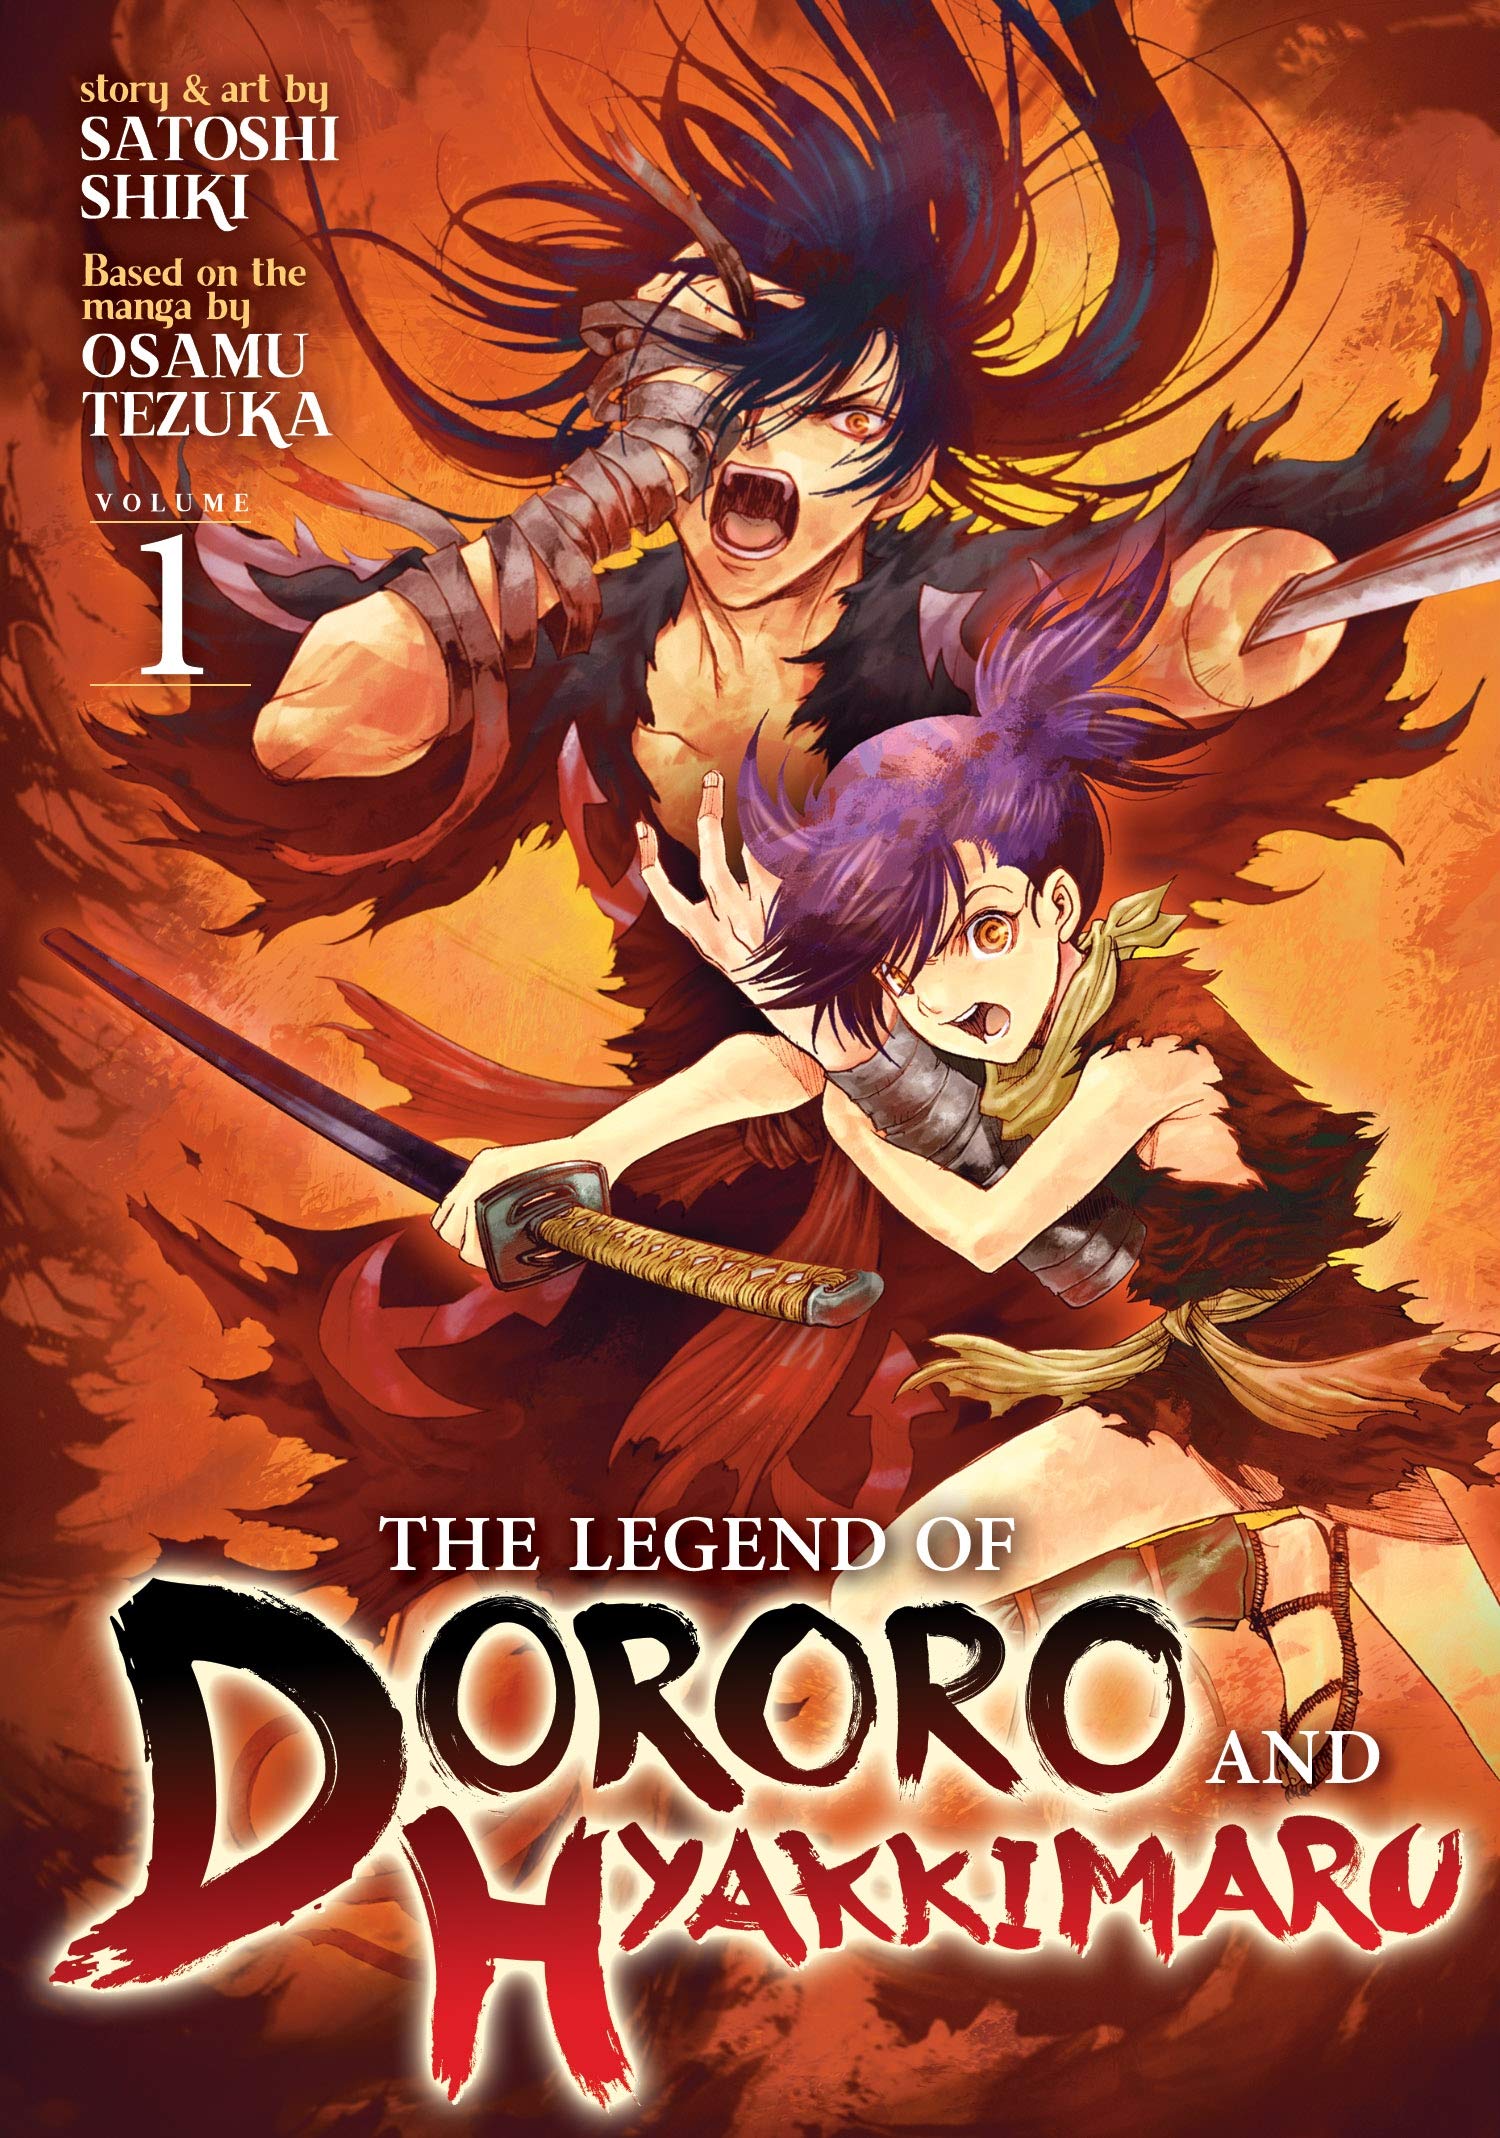 Satoshi Shiki, adaptador de Dororo, publicará un nuevo manga